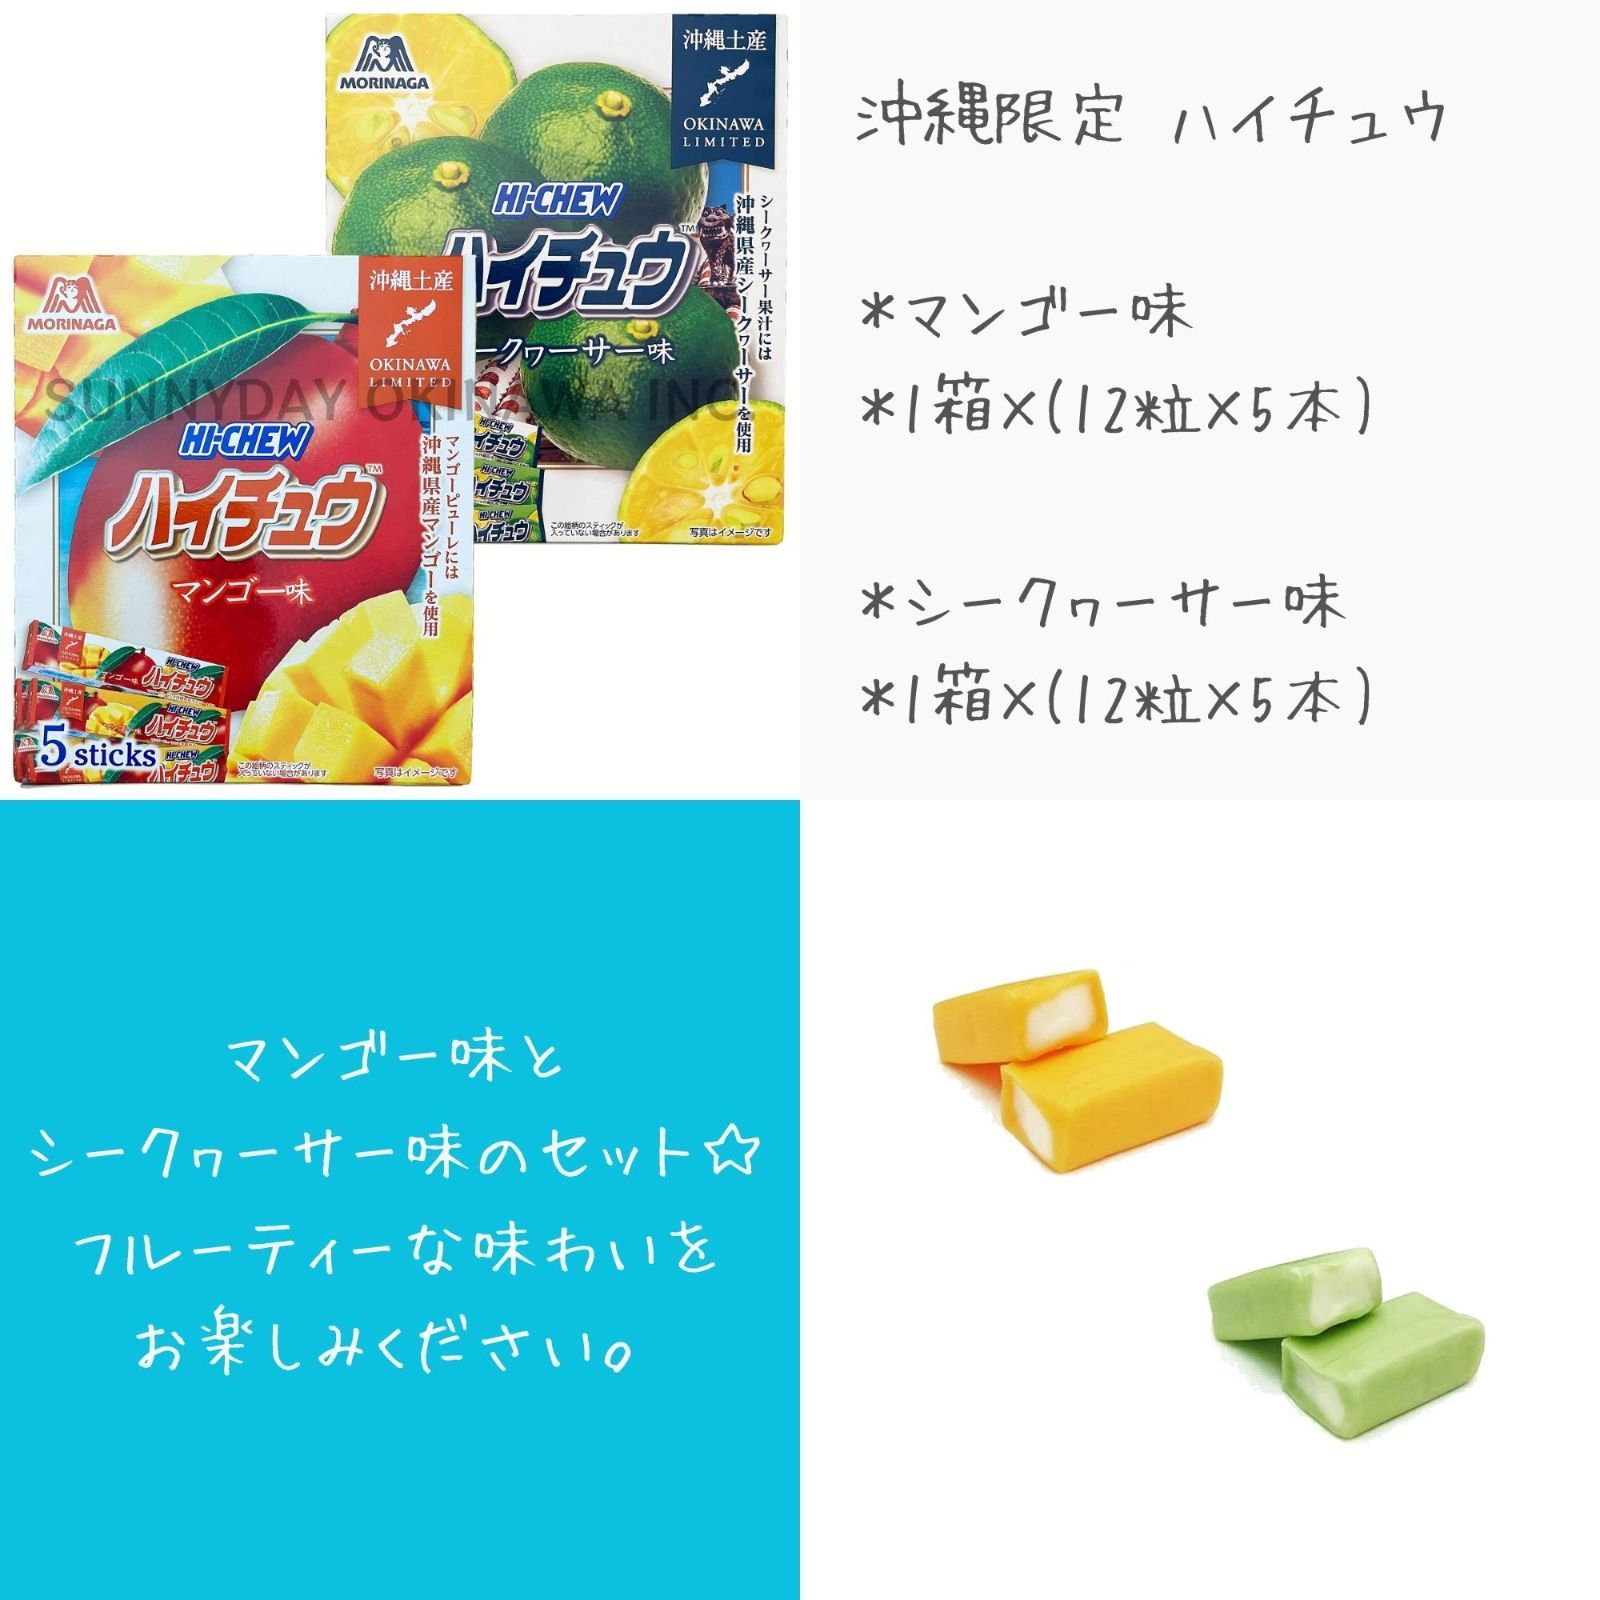 沖縄限定 ハイチュウ 2箱 マンゴー味 シークヮーサー味 森永製菓 お土産 お取り寄せ - メルカリ